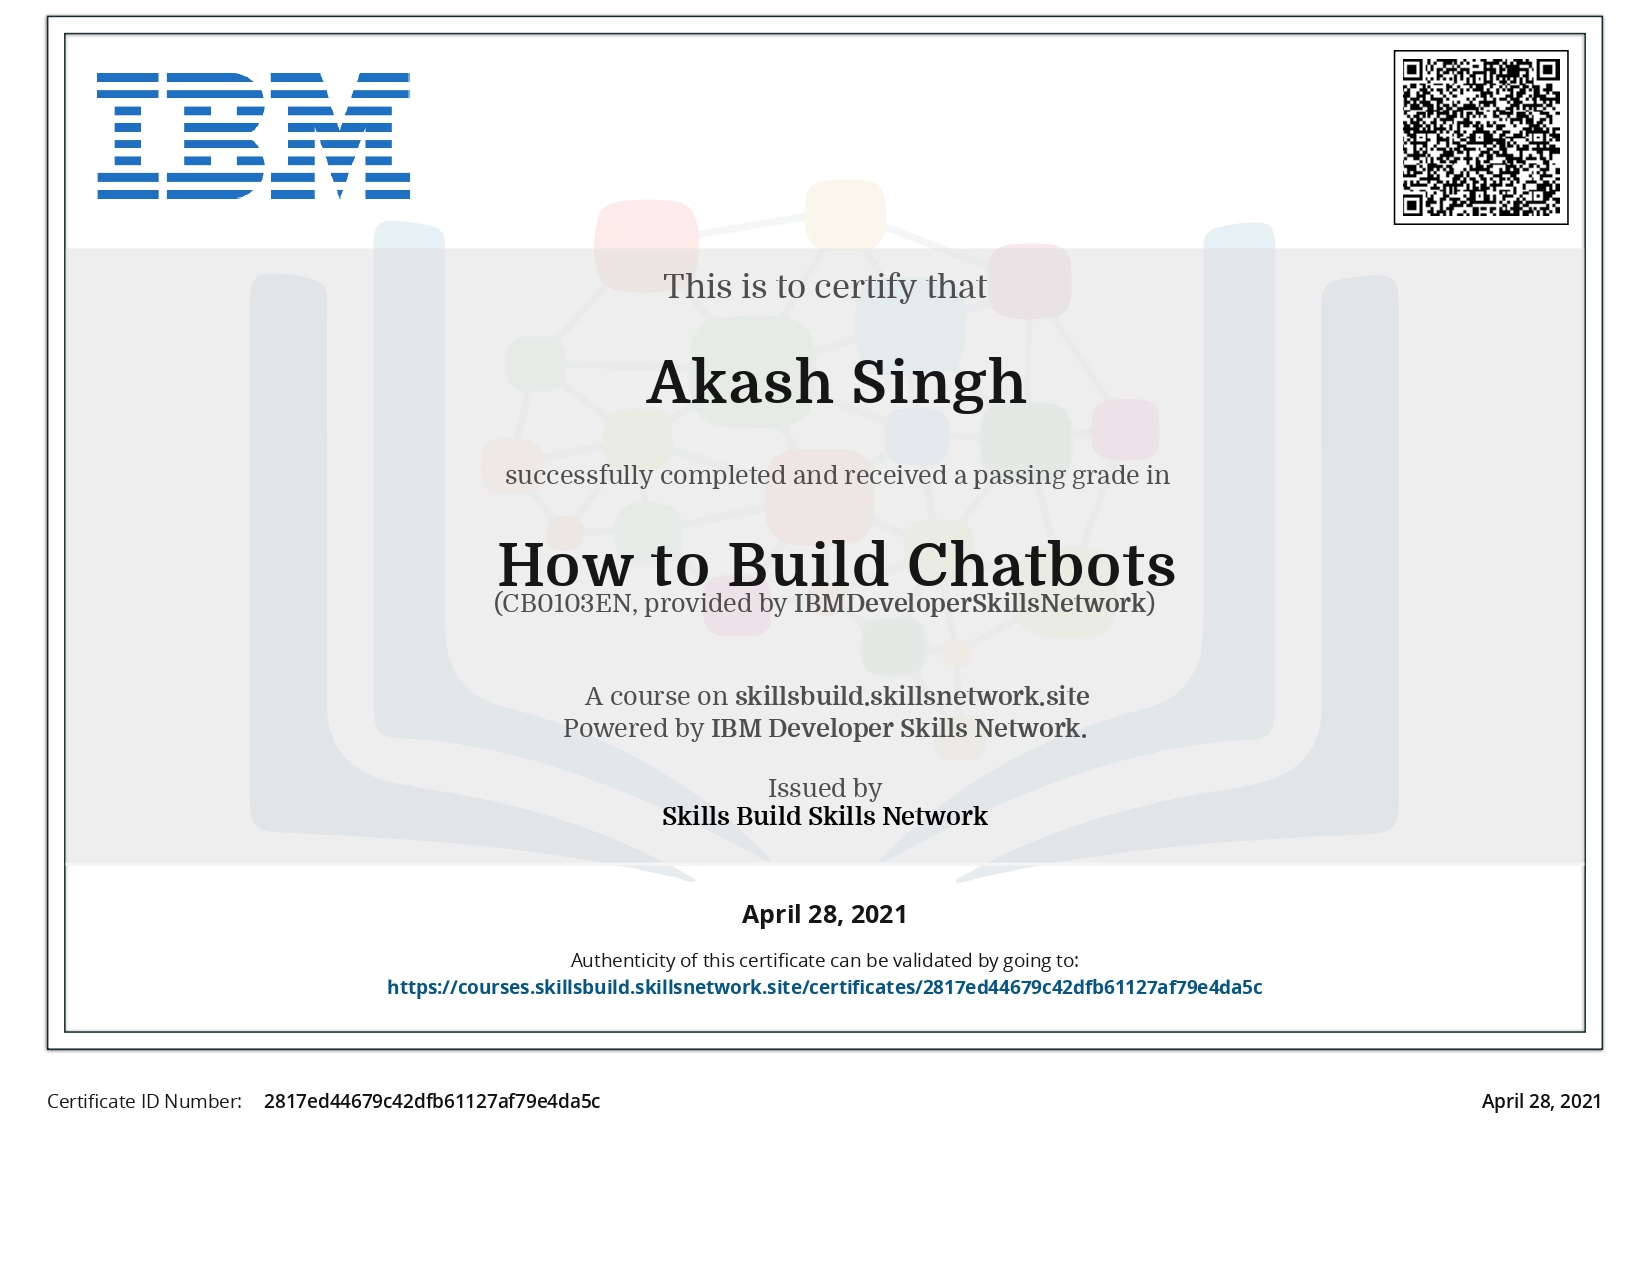 ' IBM SkillsBuild Certifications '_page-0008.jpg